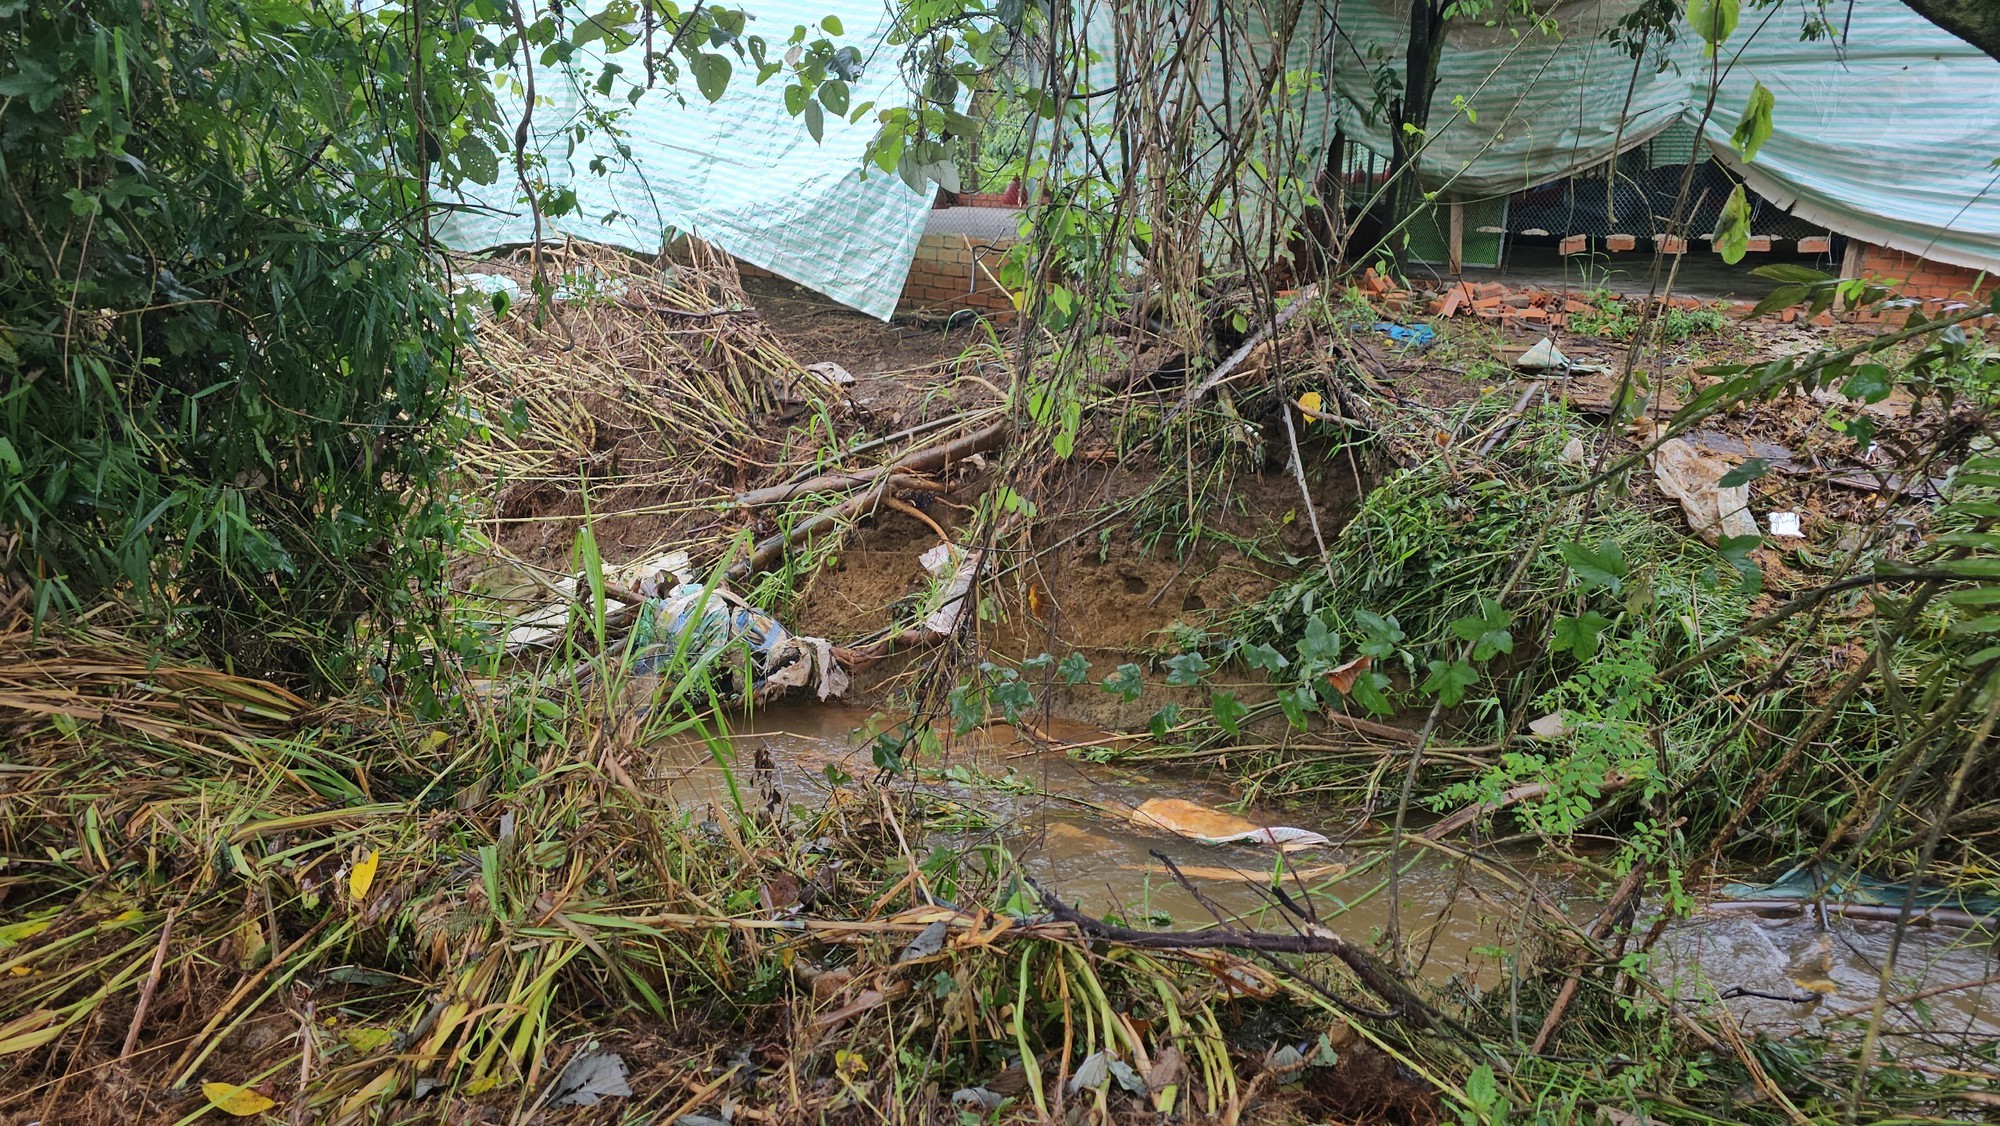 Vỡ hồ chứa nước ở Đắk Nông gây thiệt hại hơn nửa tỷ đồng - Ảnh 2.